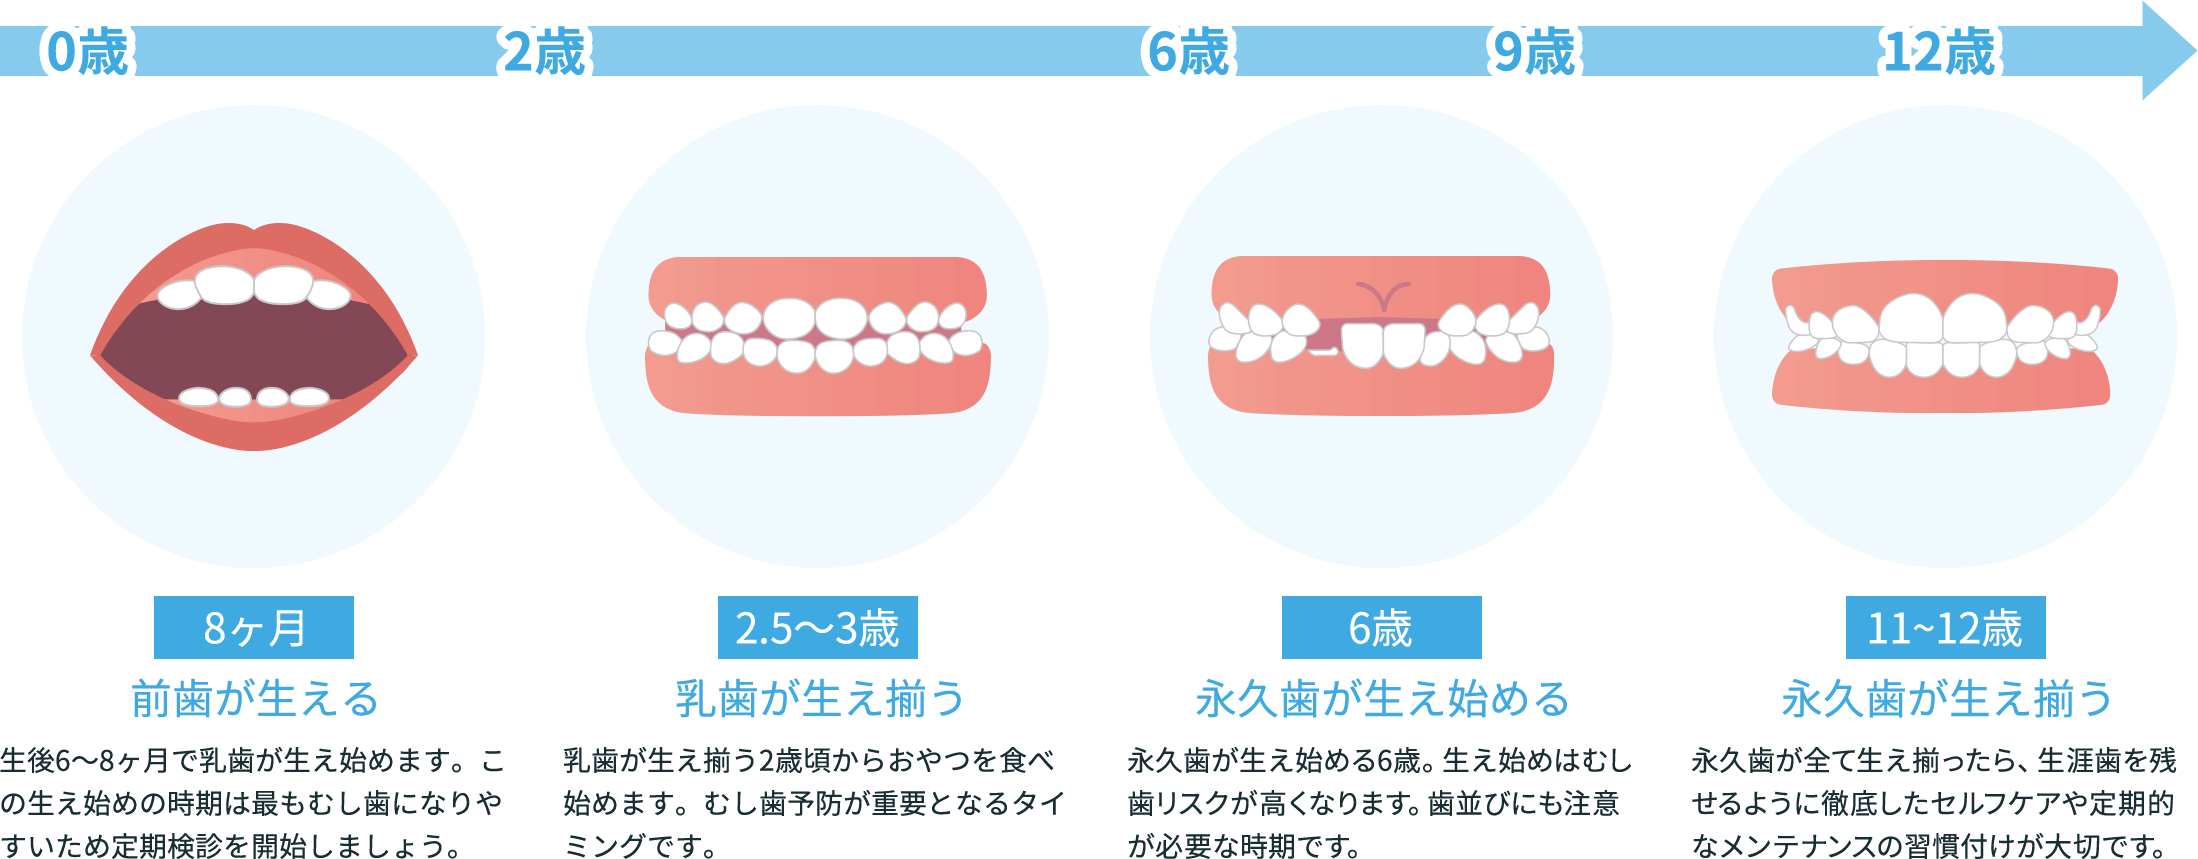 歯の発育